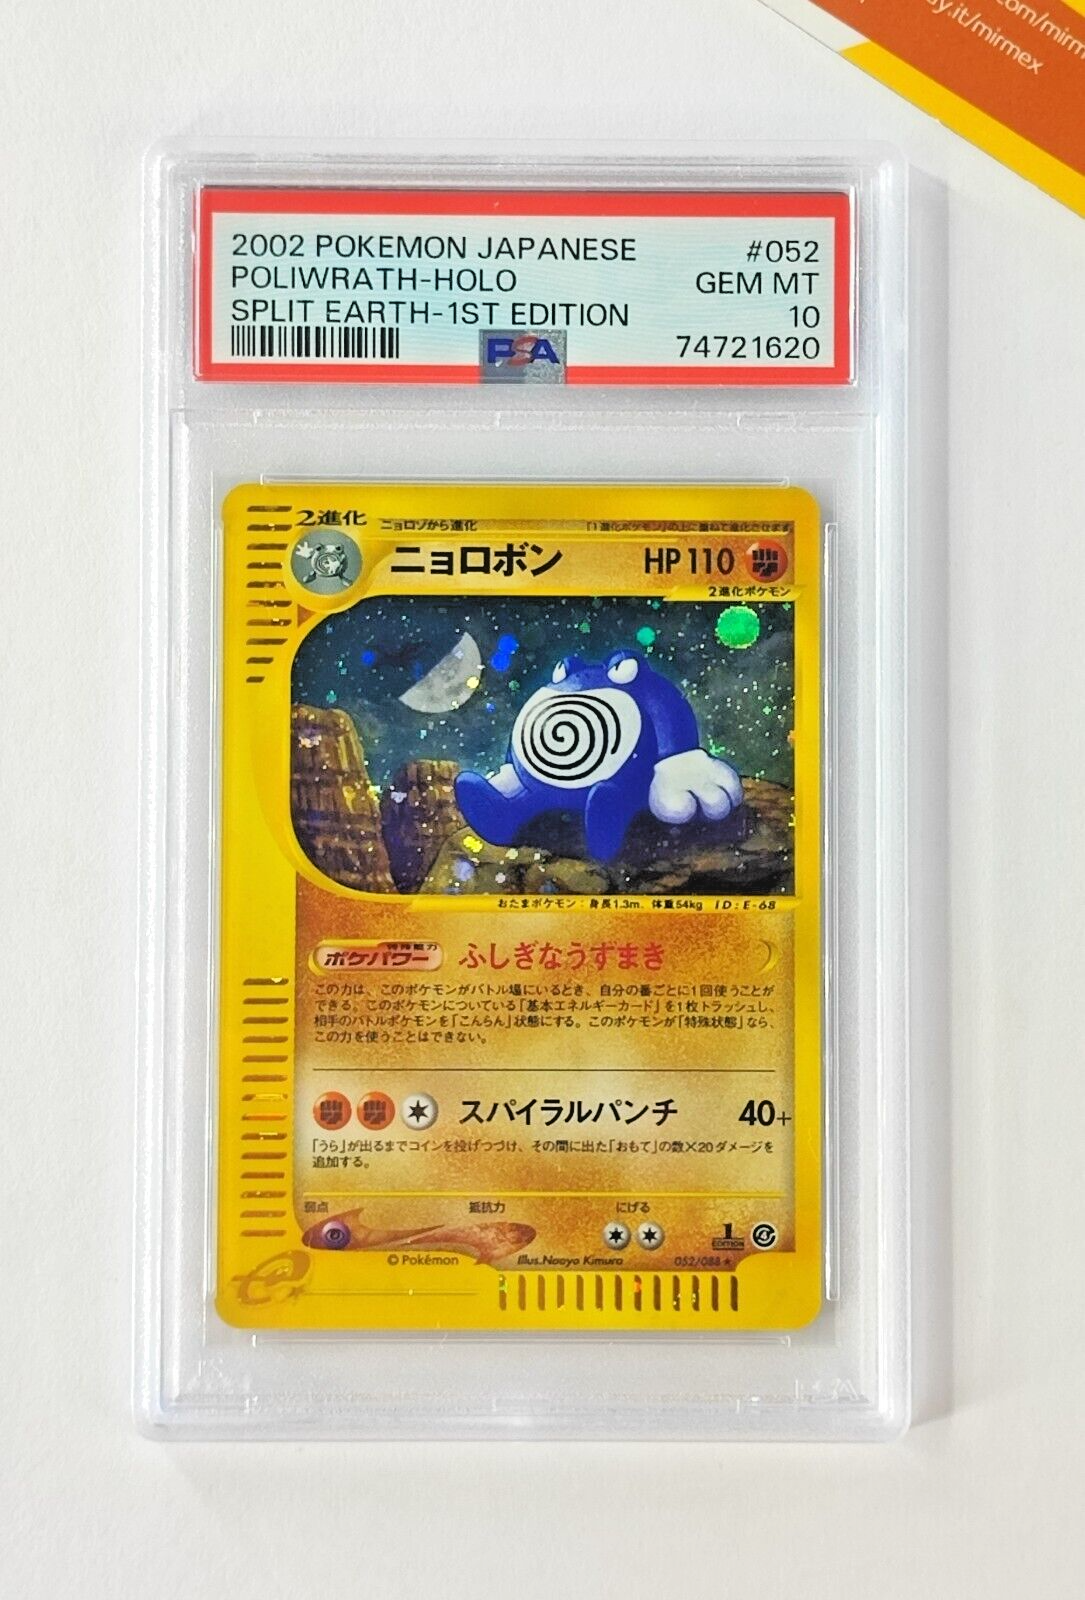 Pokemon PSA 10 Poliwrath 052 1st Ed Split Earth 2002 Skyridge Japanese